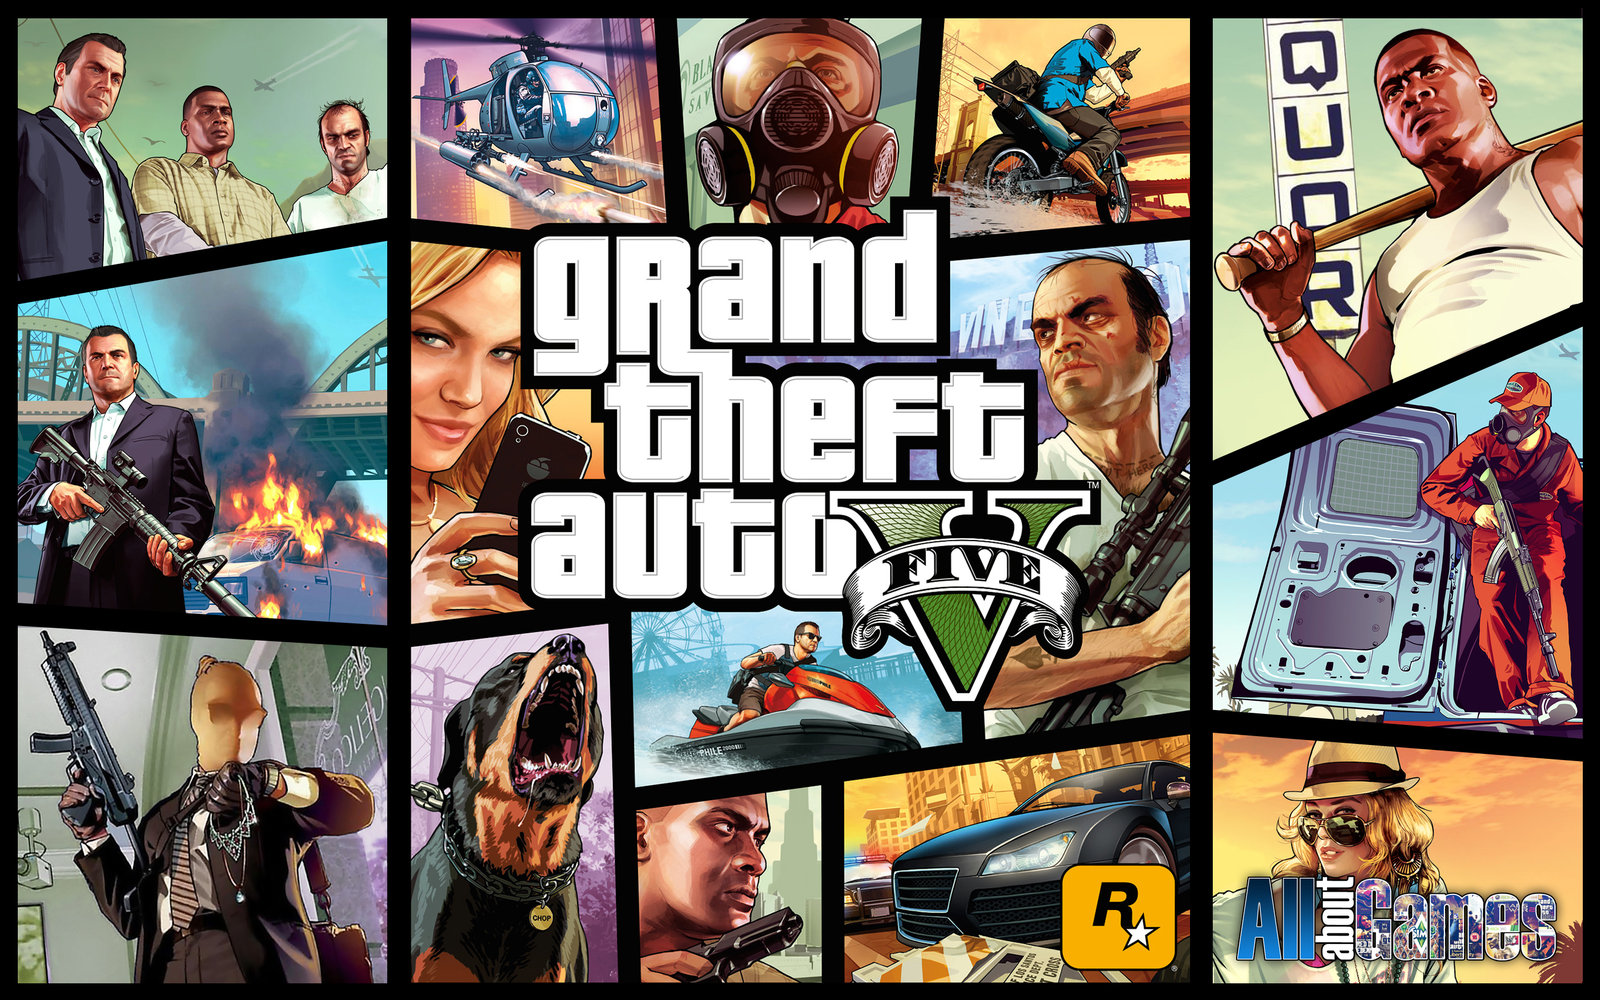 Bạn là fan hâm mộ của trò chơi Grand Theft Auto V? Hãy tải về ngay hình nền GTA với độ phân giải 1600x1000 để trang trí cho máy tính của bạn thêm phong cách. Hình nền sẽ khiến bạn yêu thích hơn nữa trò chơi này và nâng cao sự đam mê của bạn với những hình ảnh sinh động và bắt mắt.